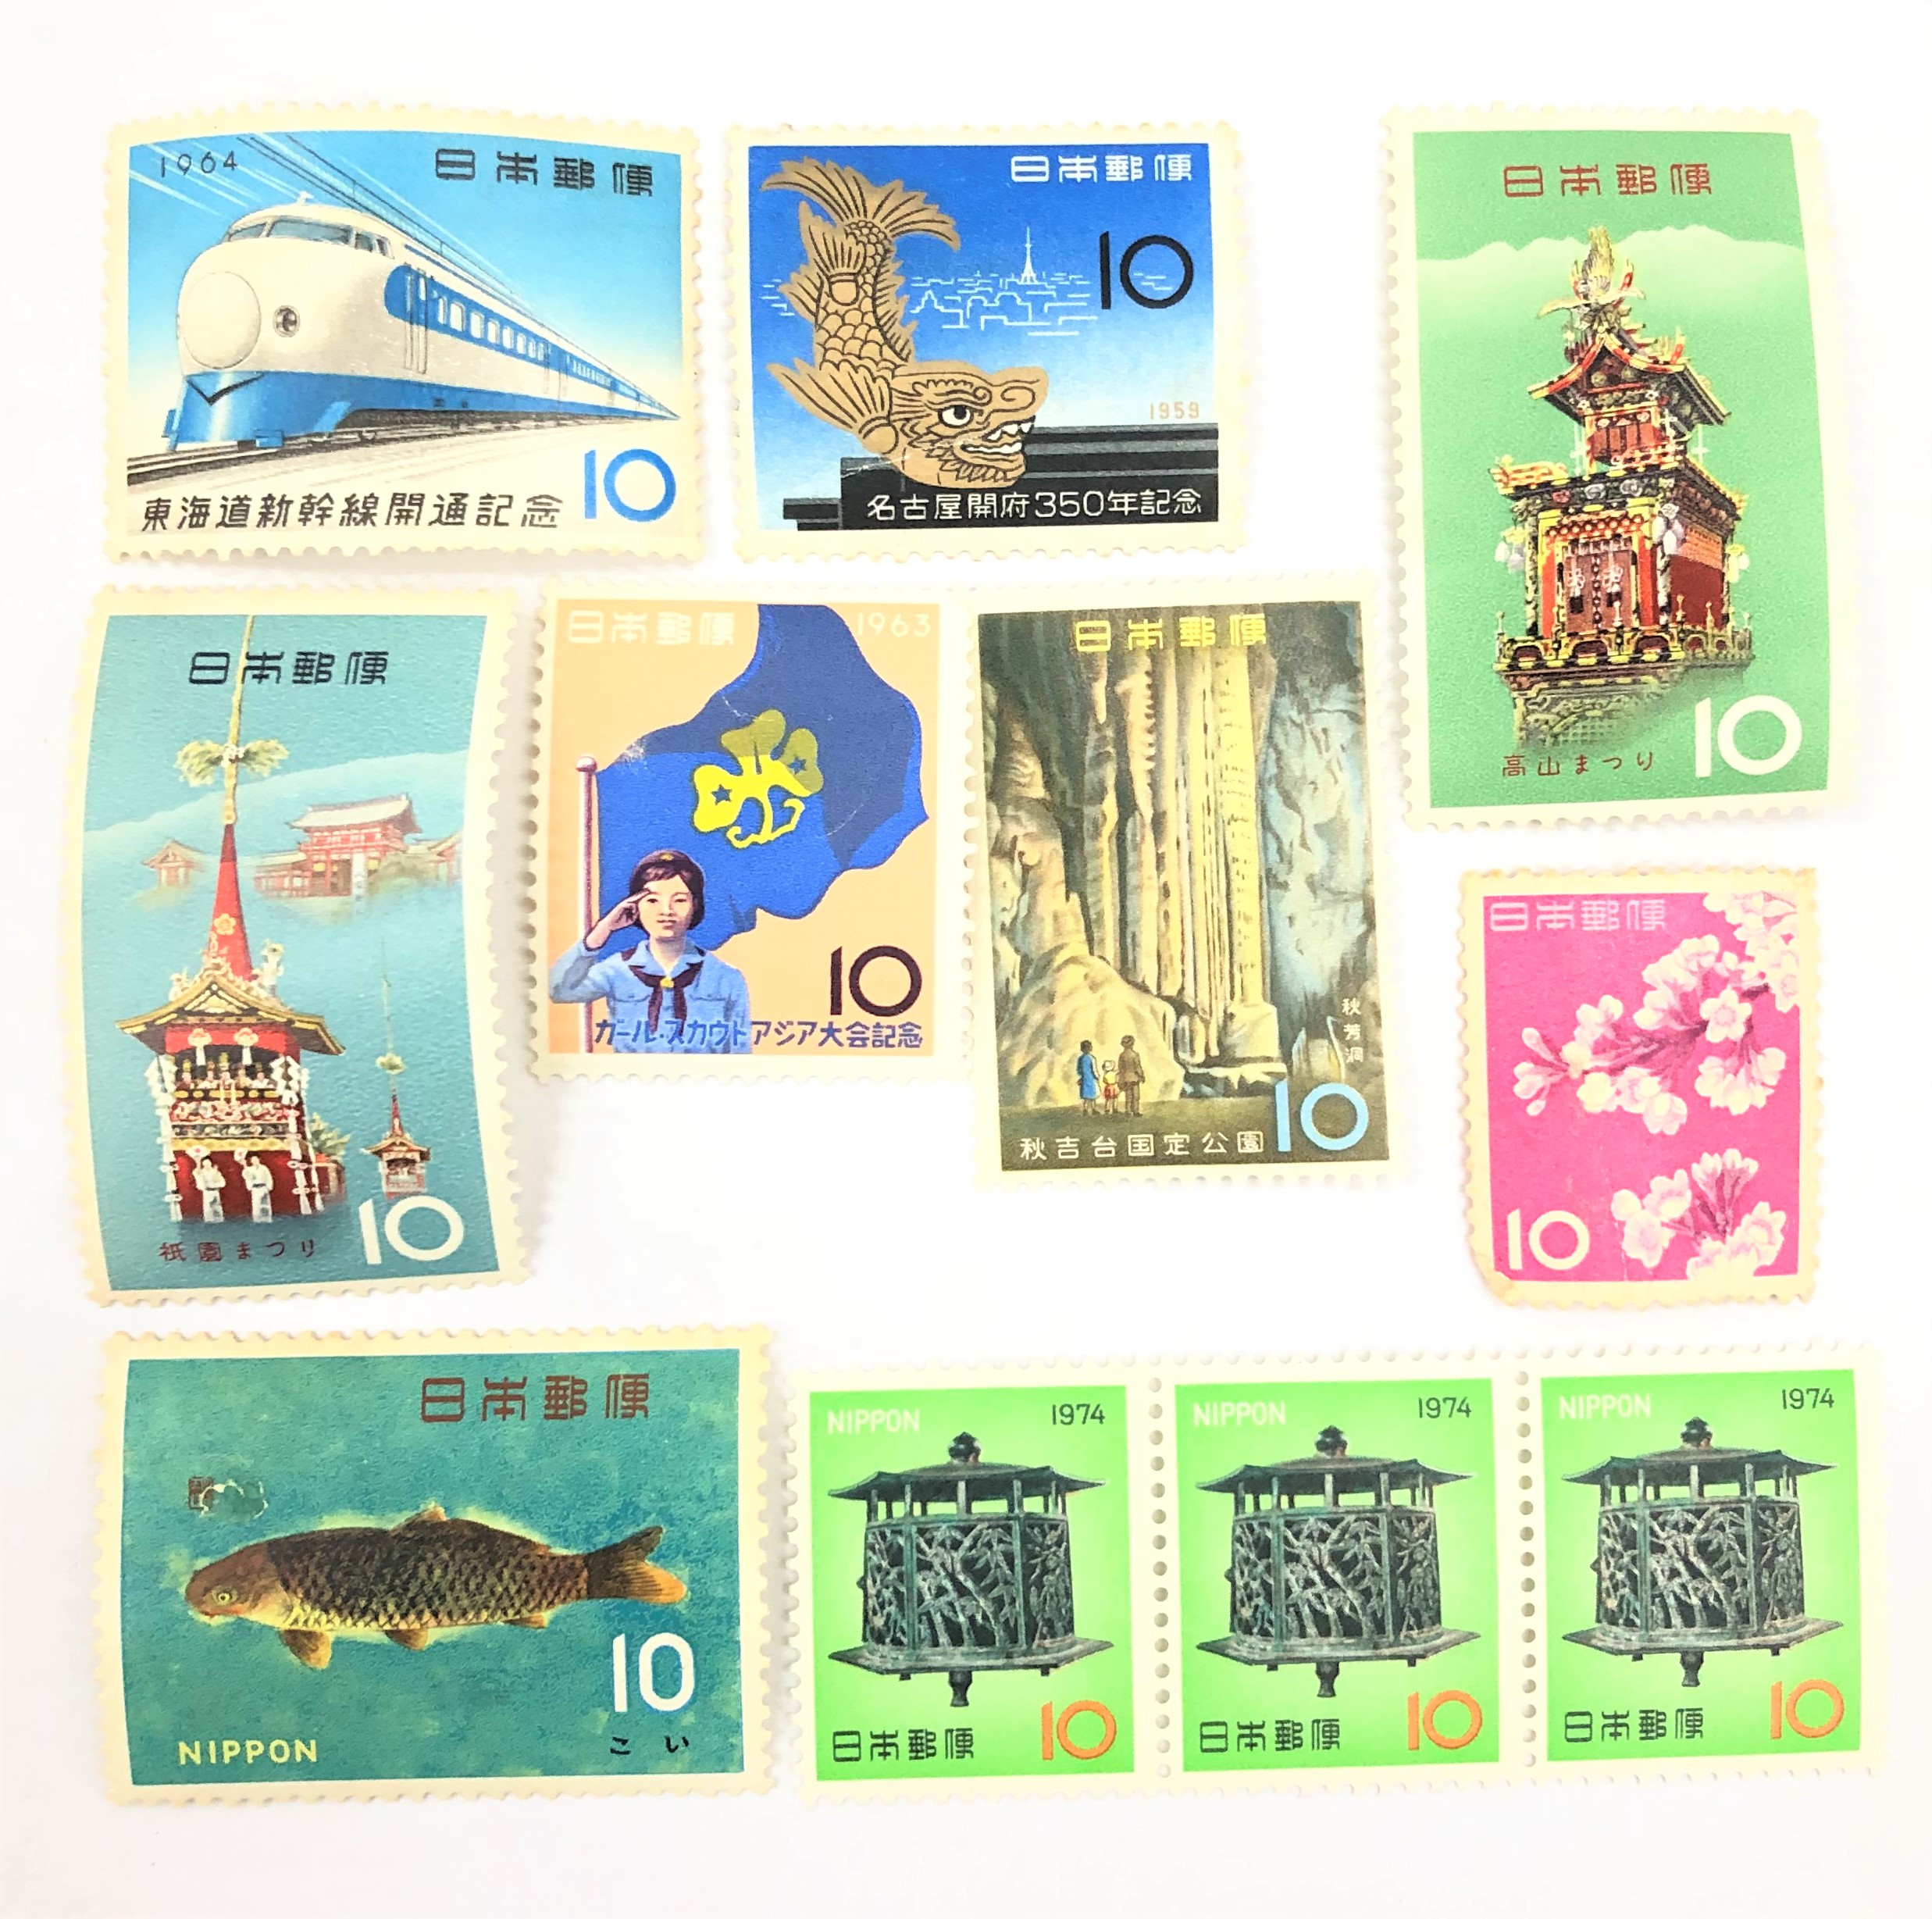 バラ切手 10円